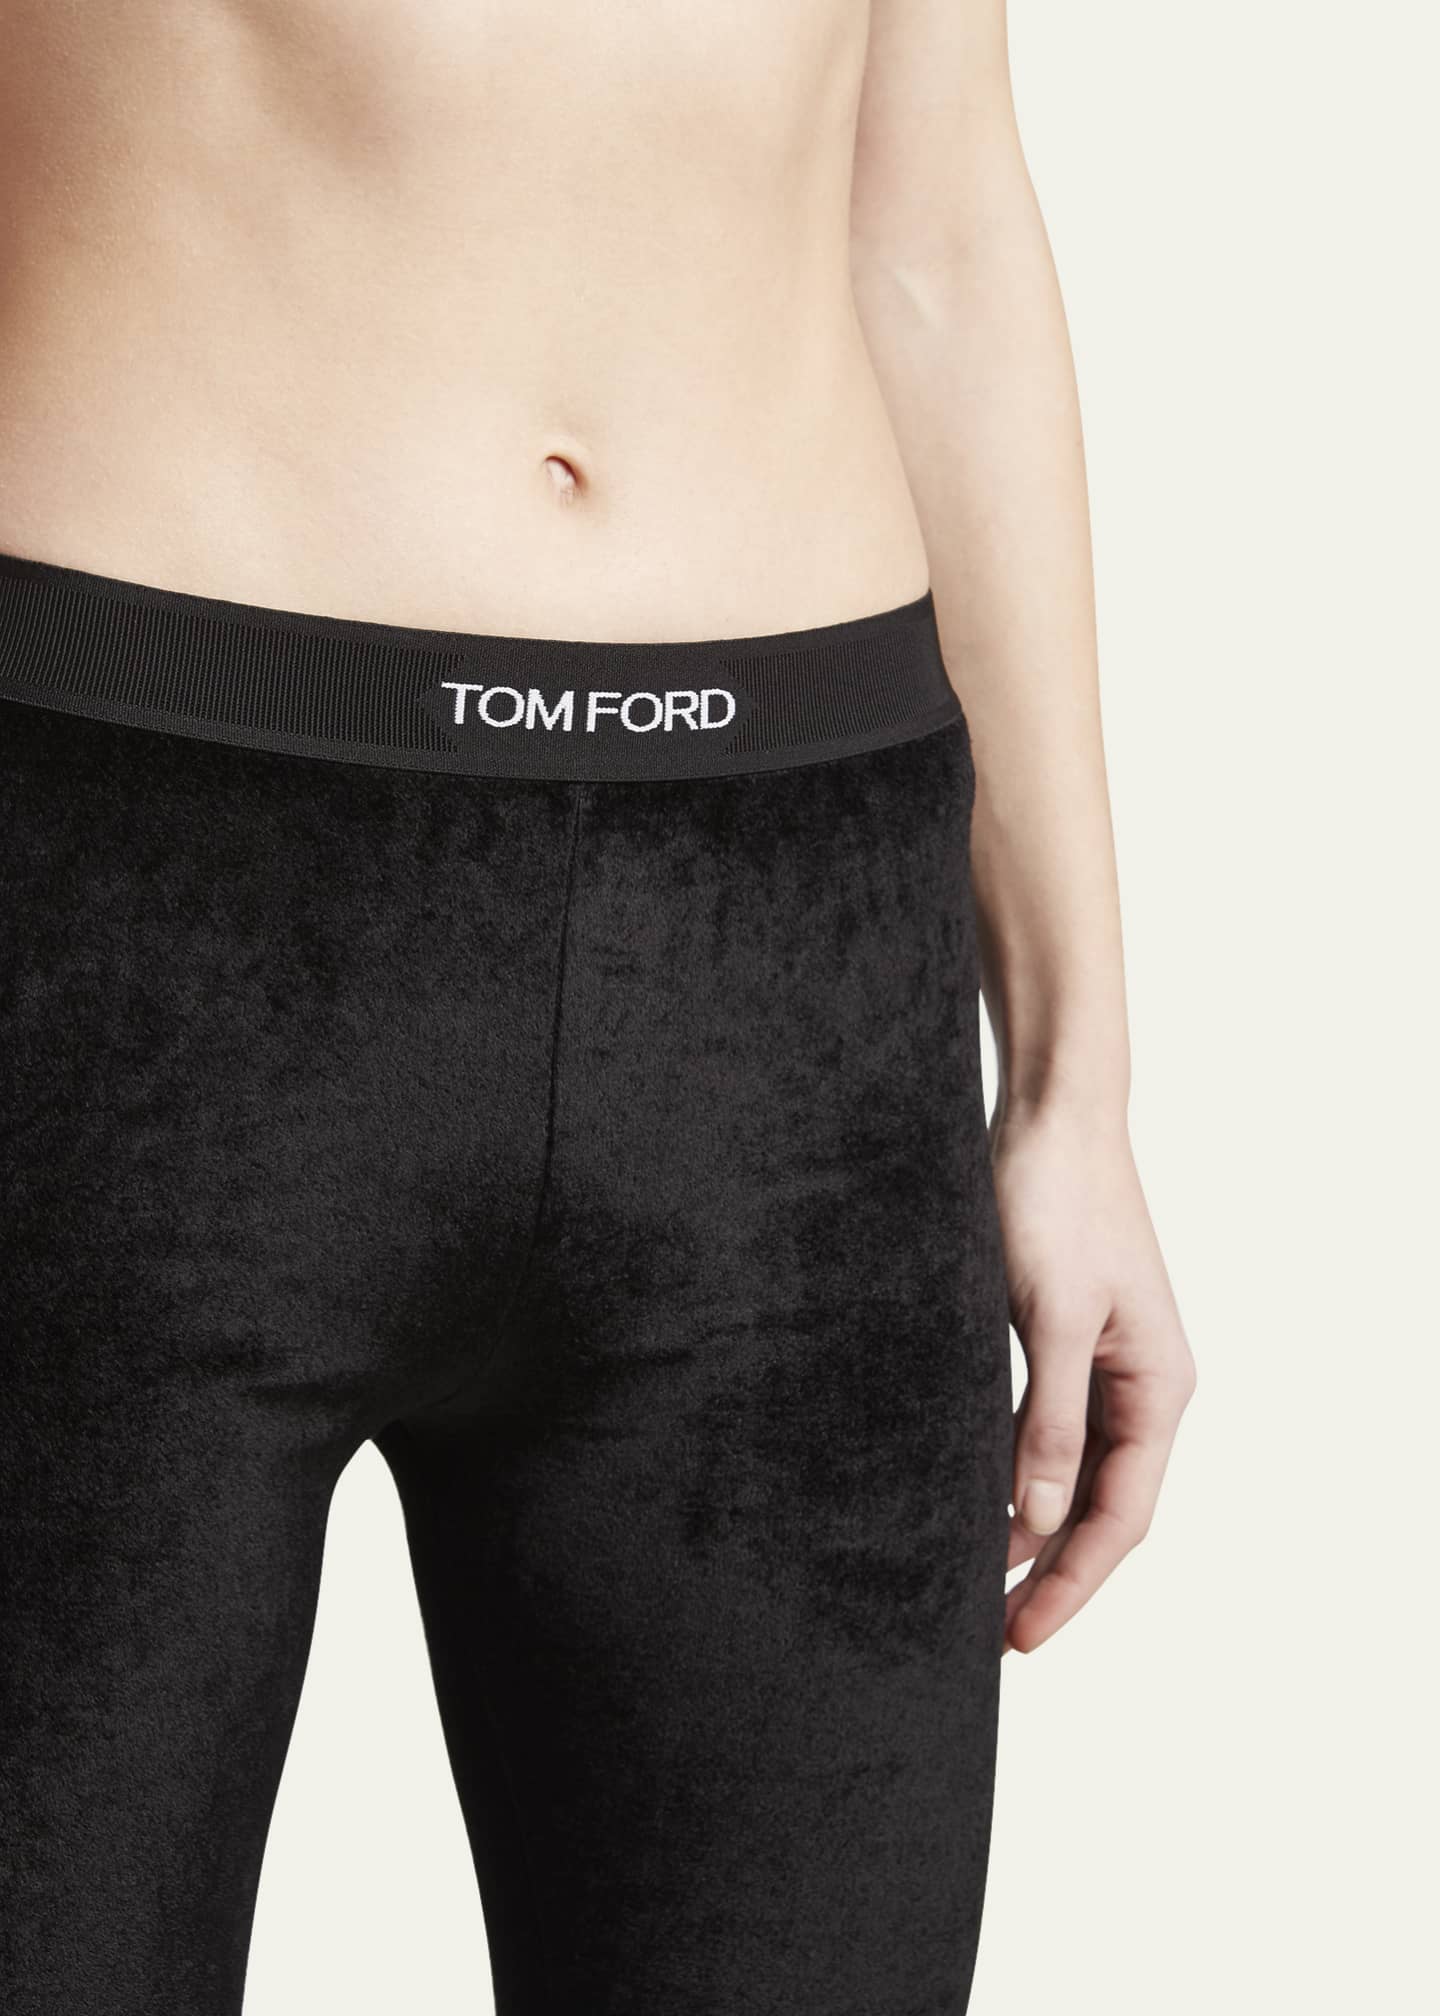 TOM FORD Logo Waist Legging in Black